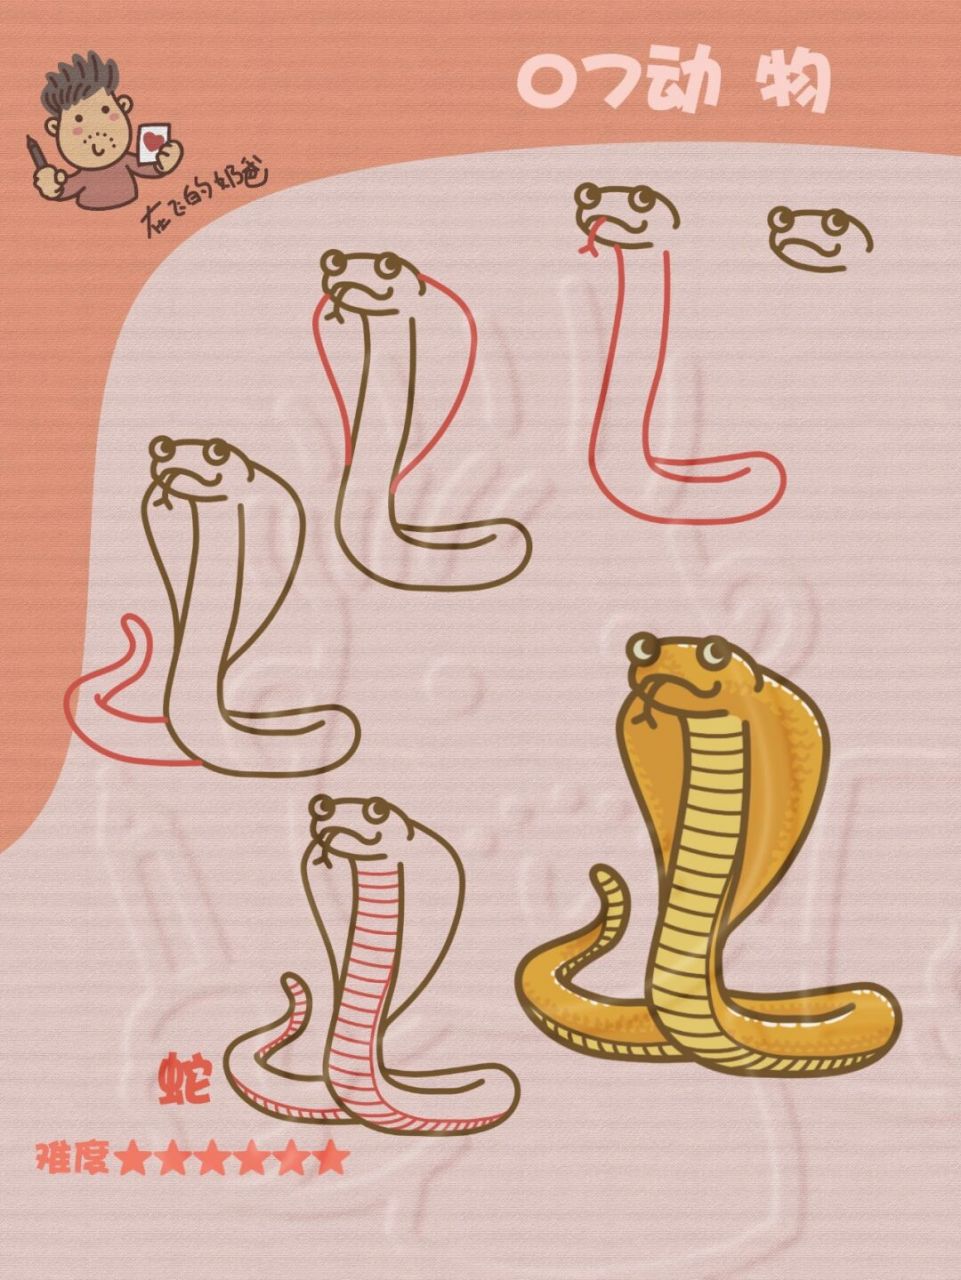 蛇的简笔画儿童可爱图片